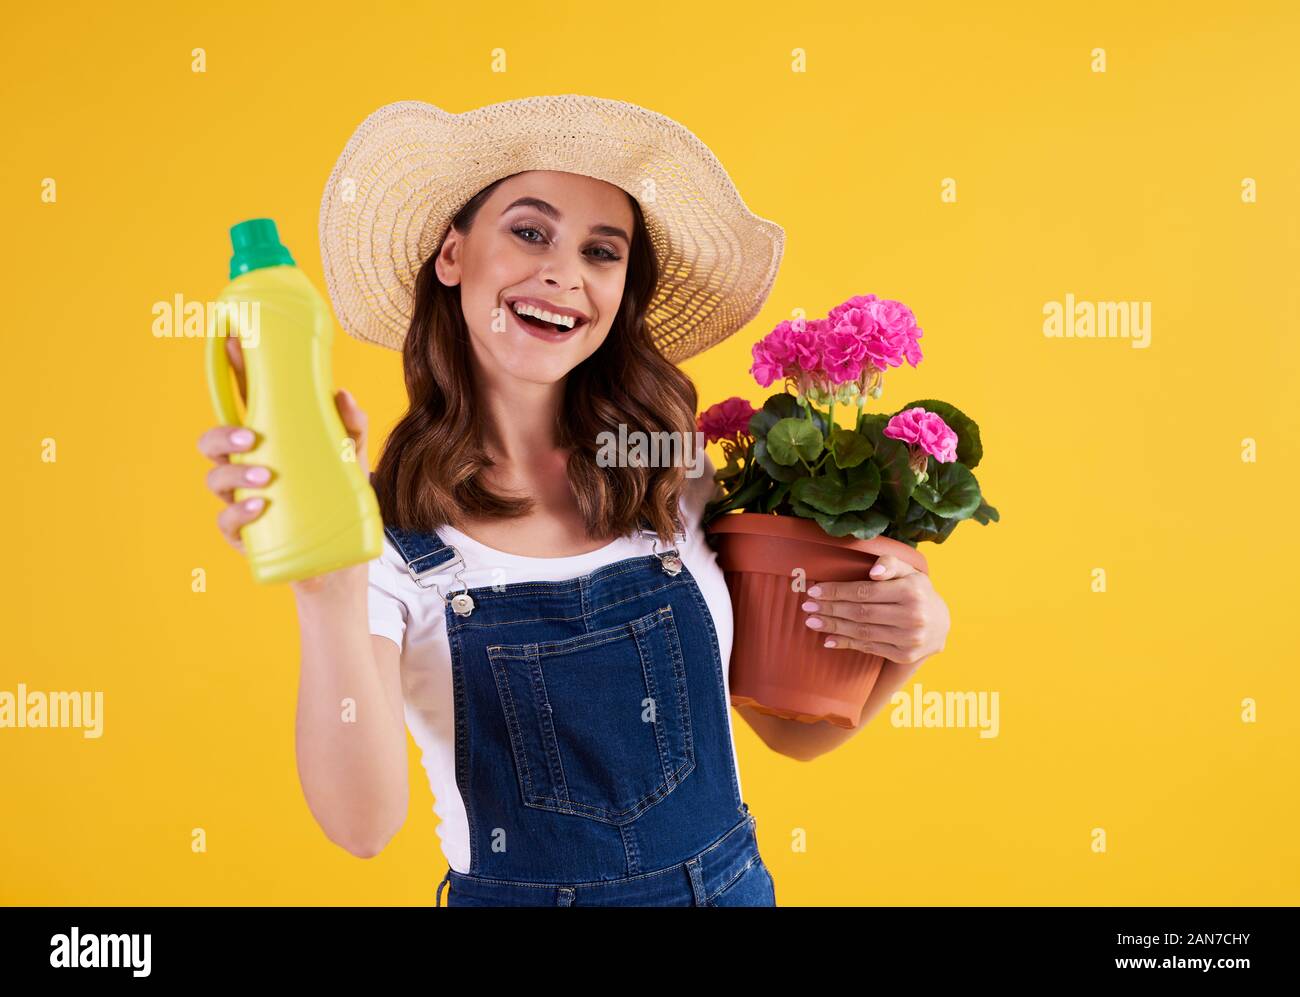 Giardiniere femmina tenendo il fertilizzante e vaso di fiori con pelargonium Foto Stock